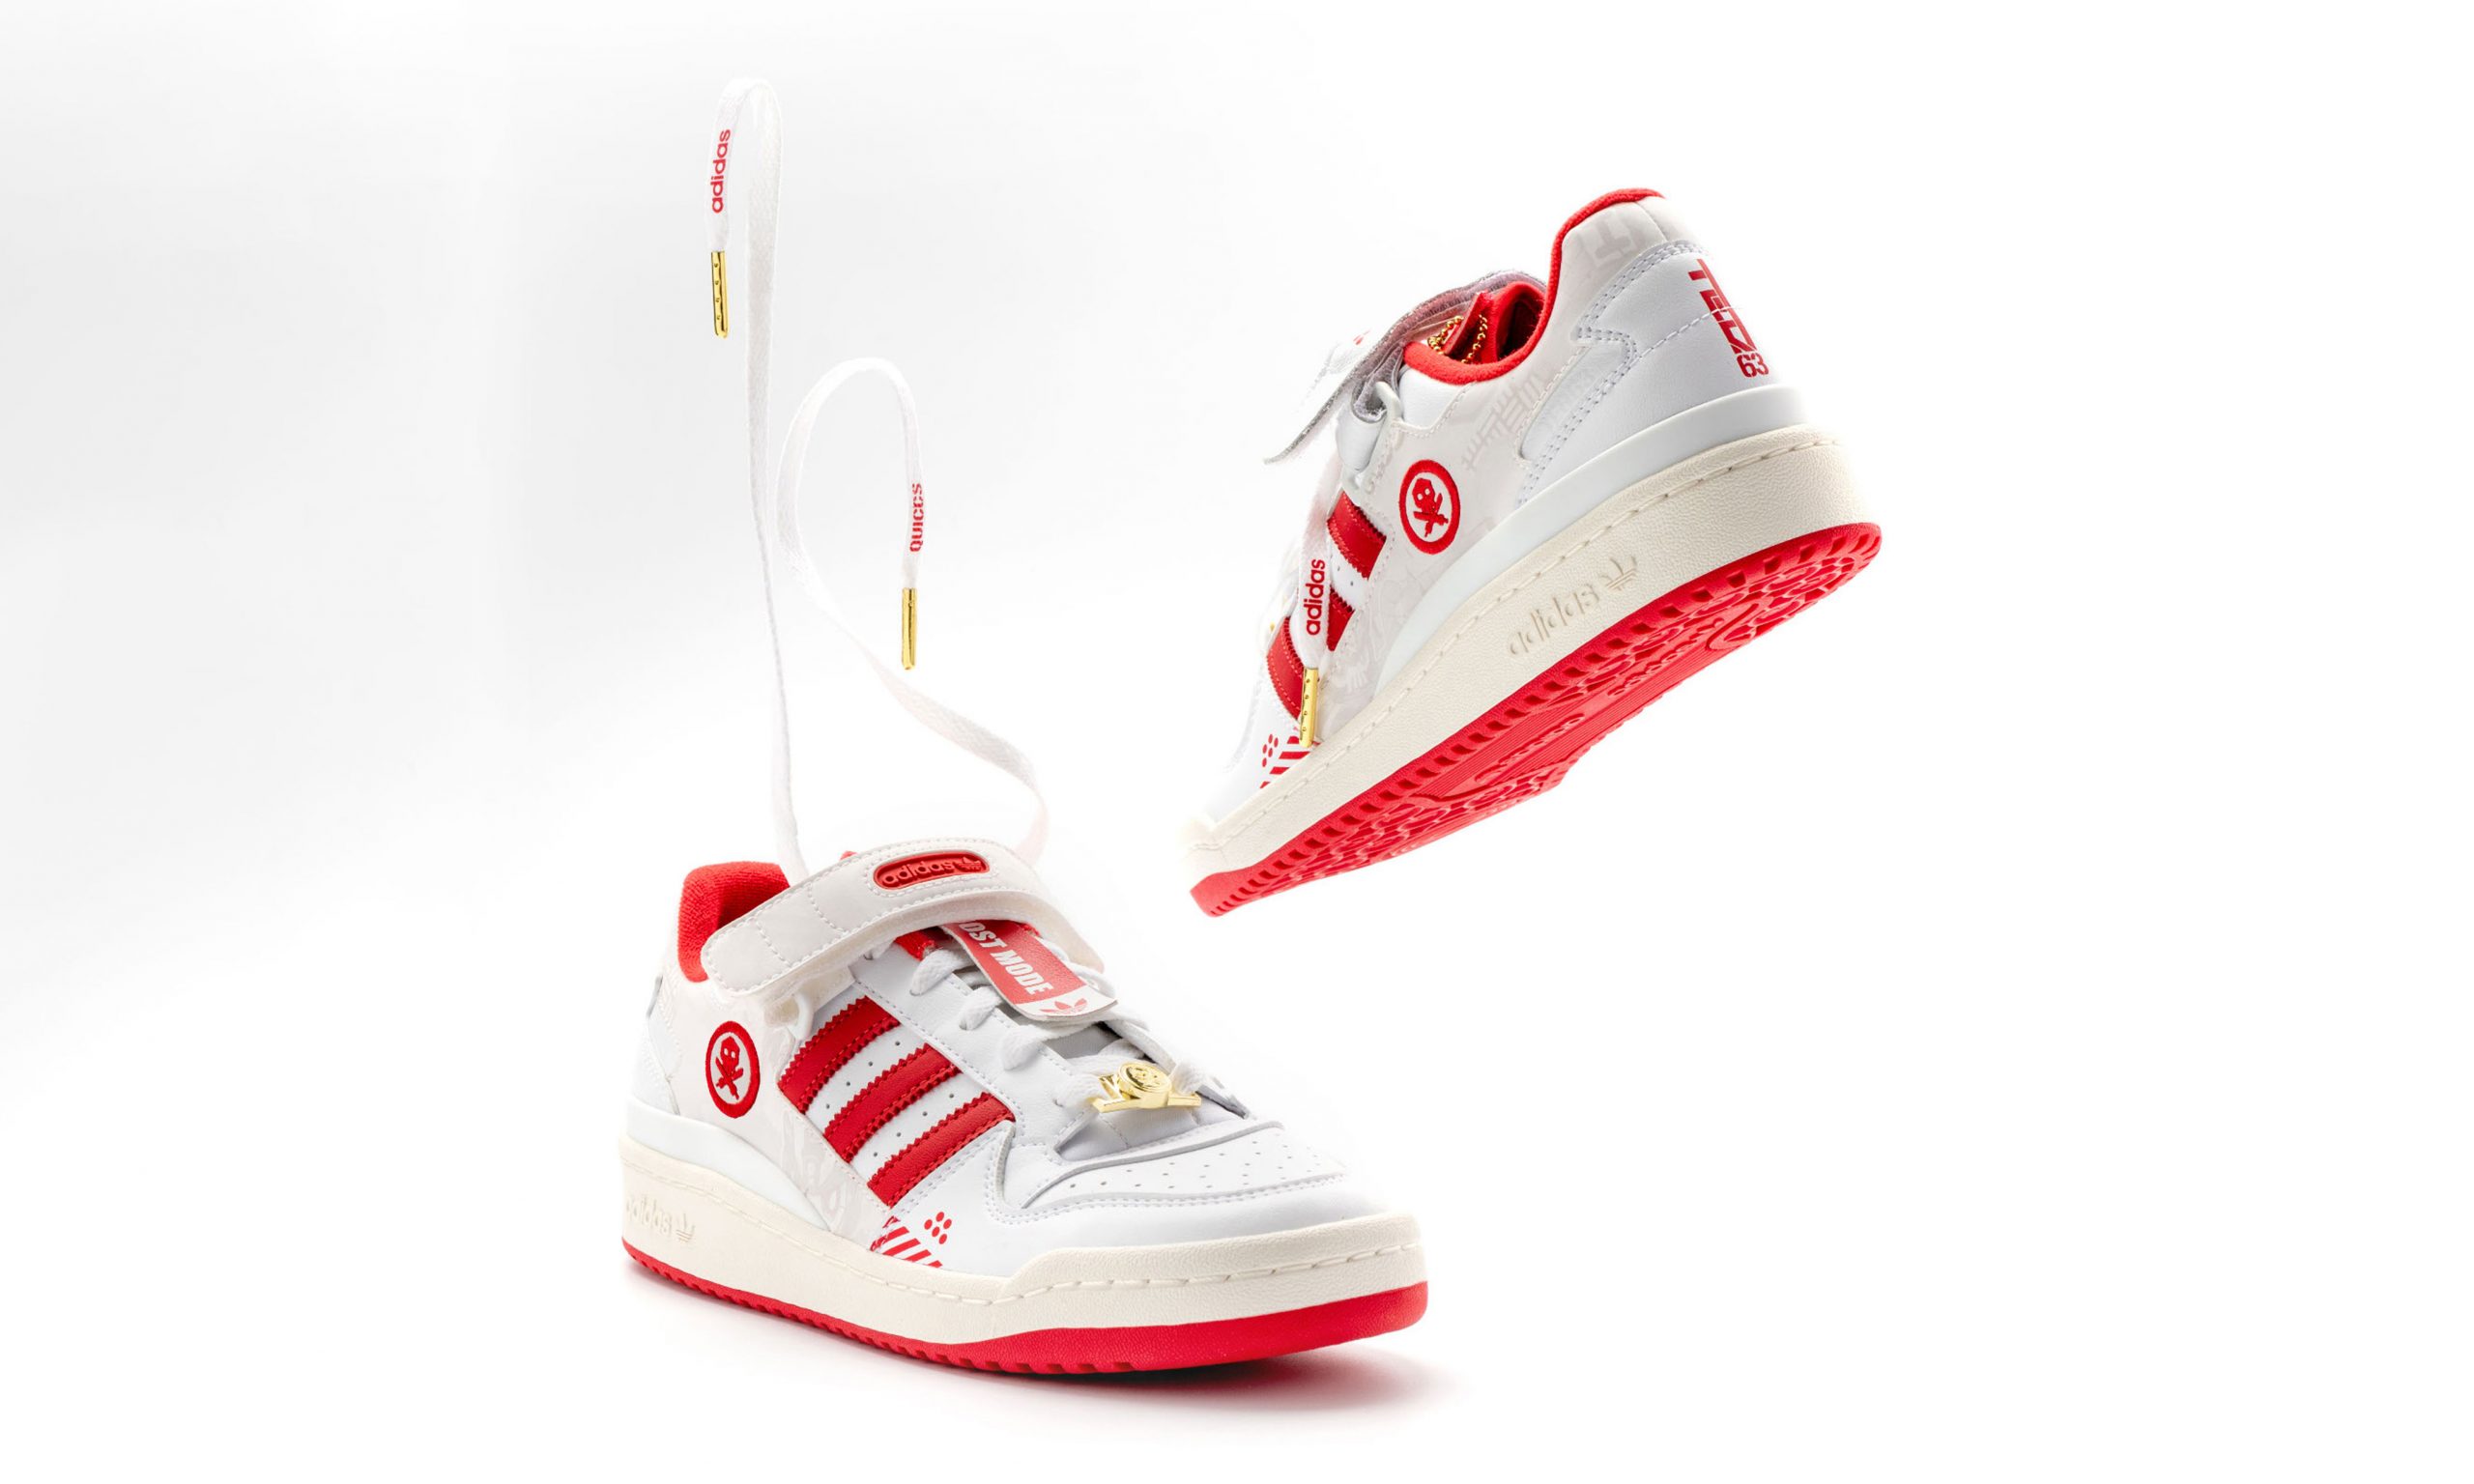 adidas Originals 携手艺术家 Quiccs 发布合作鞋款